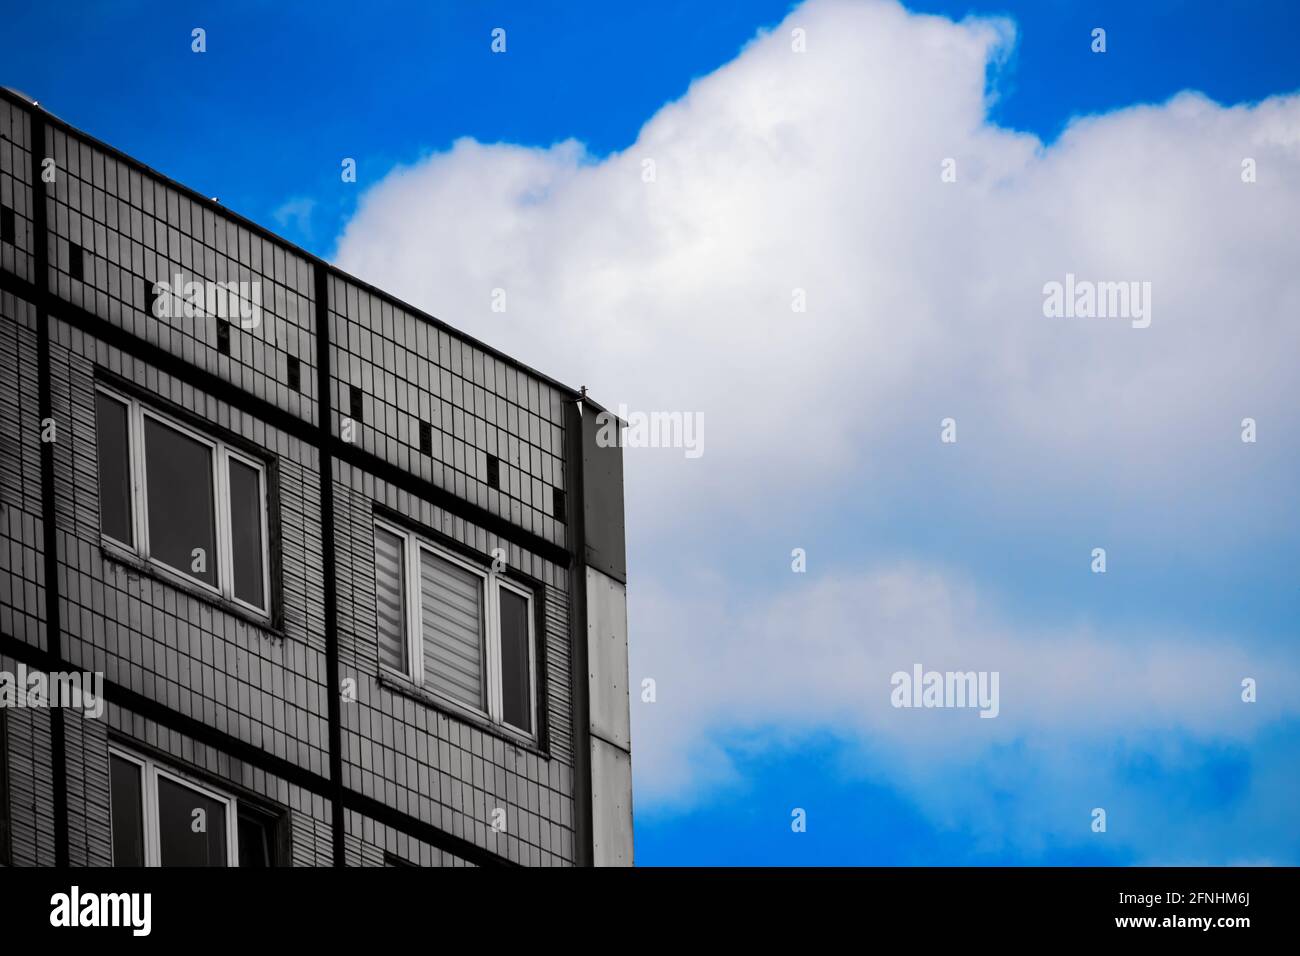 Ecke eines traurigen grauen Fertighauses gegen einen blauen Himmel mit weißer Wolke, abstraktes Minimalismus-Konzept Stockfoto